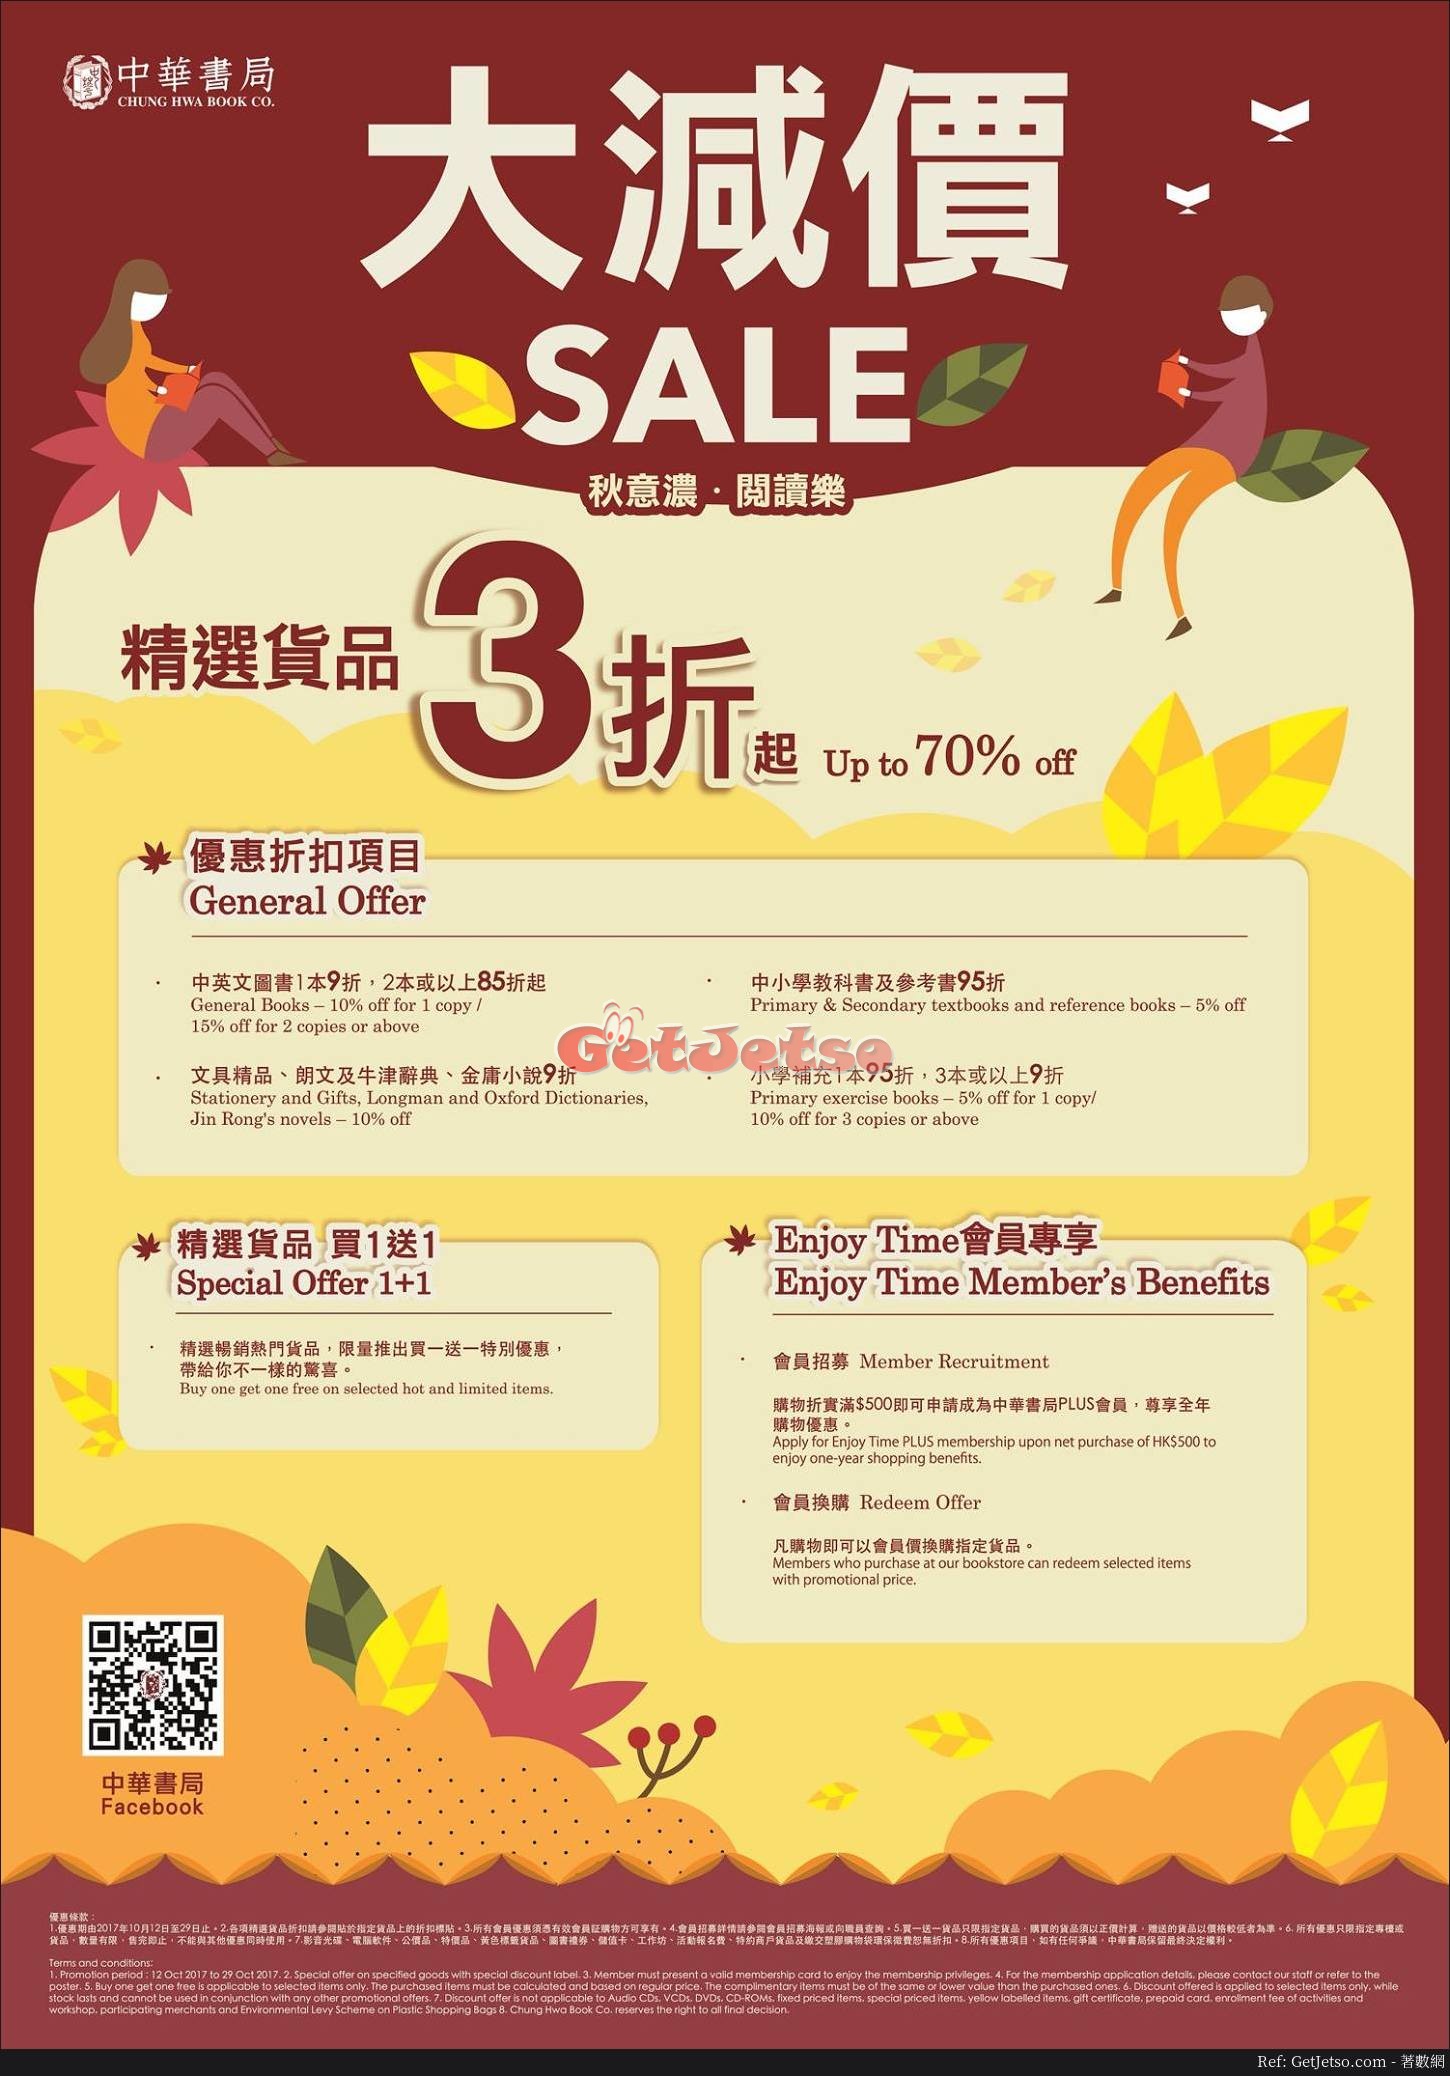 中華書局低至3折秋季減價優惠(至17年10月29日)圖片1